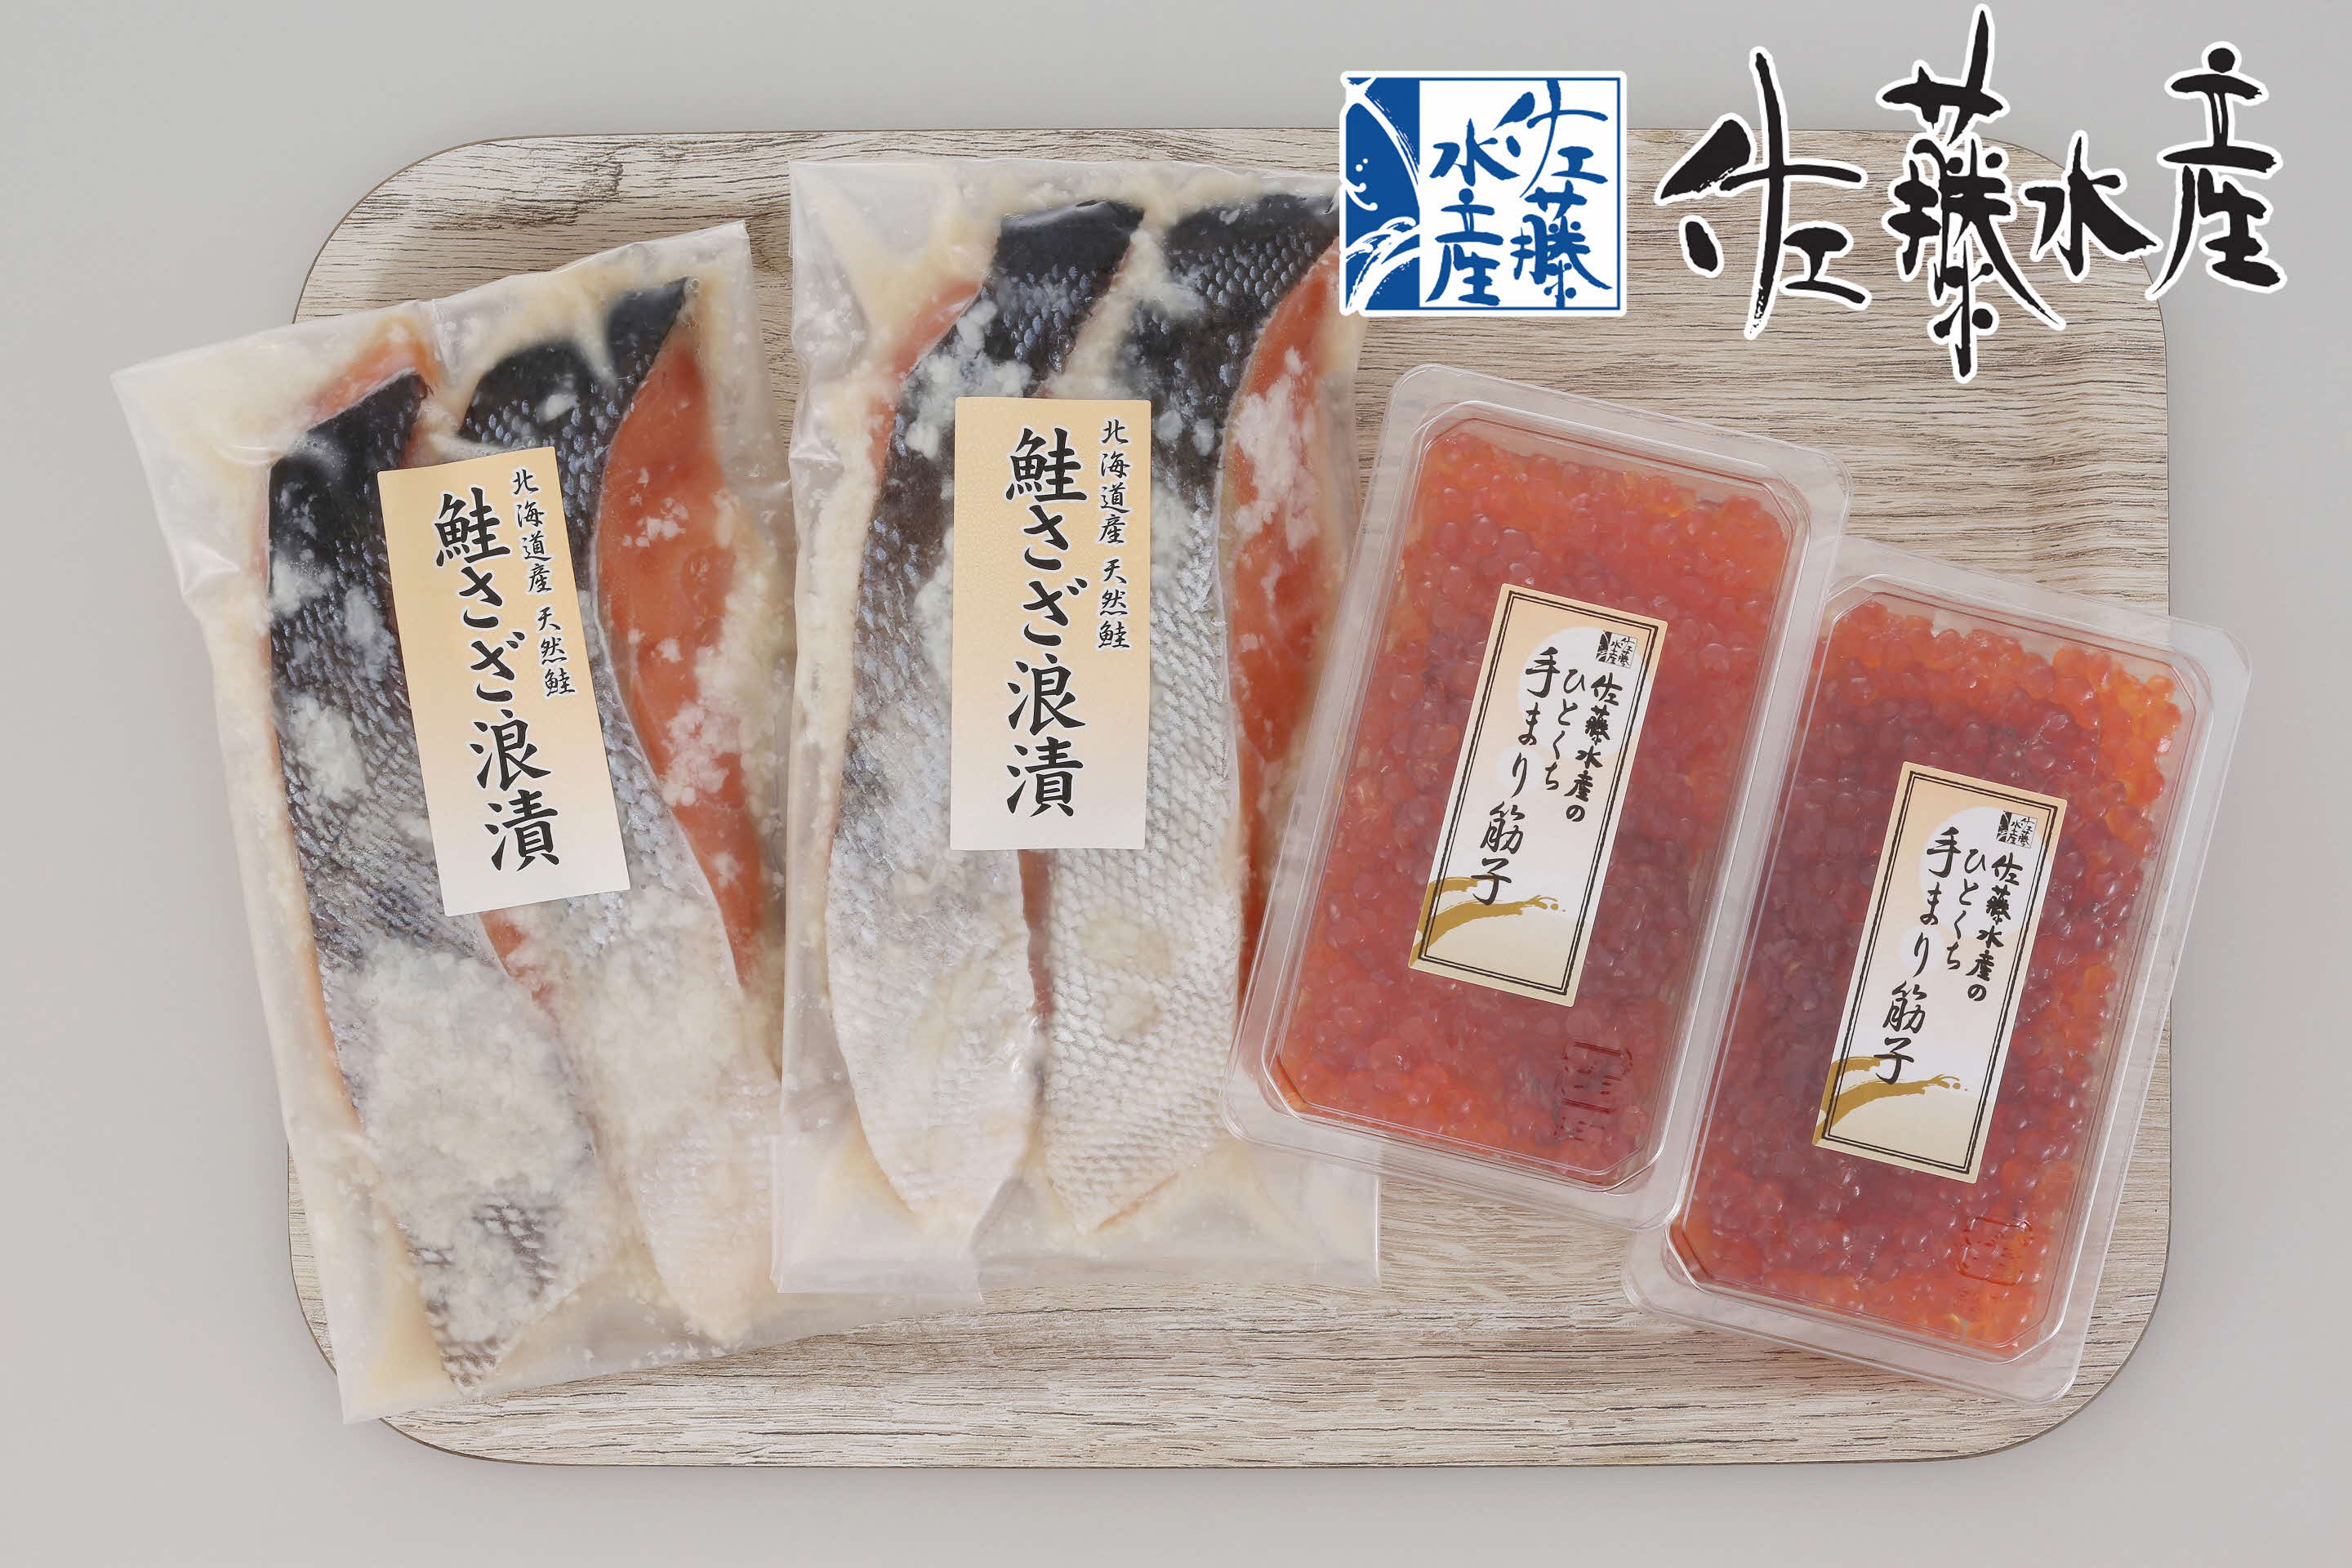 O-09 佐藤水産の豊富産の手まり筋子と鮭さざ浪漬B【KAT-307】